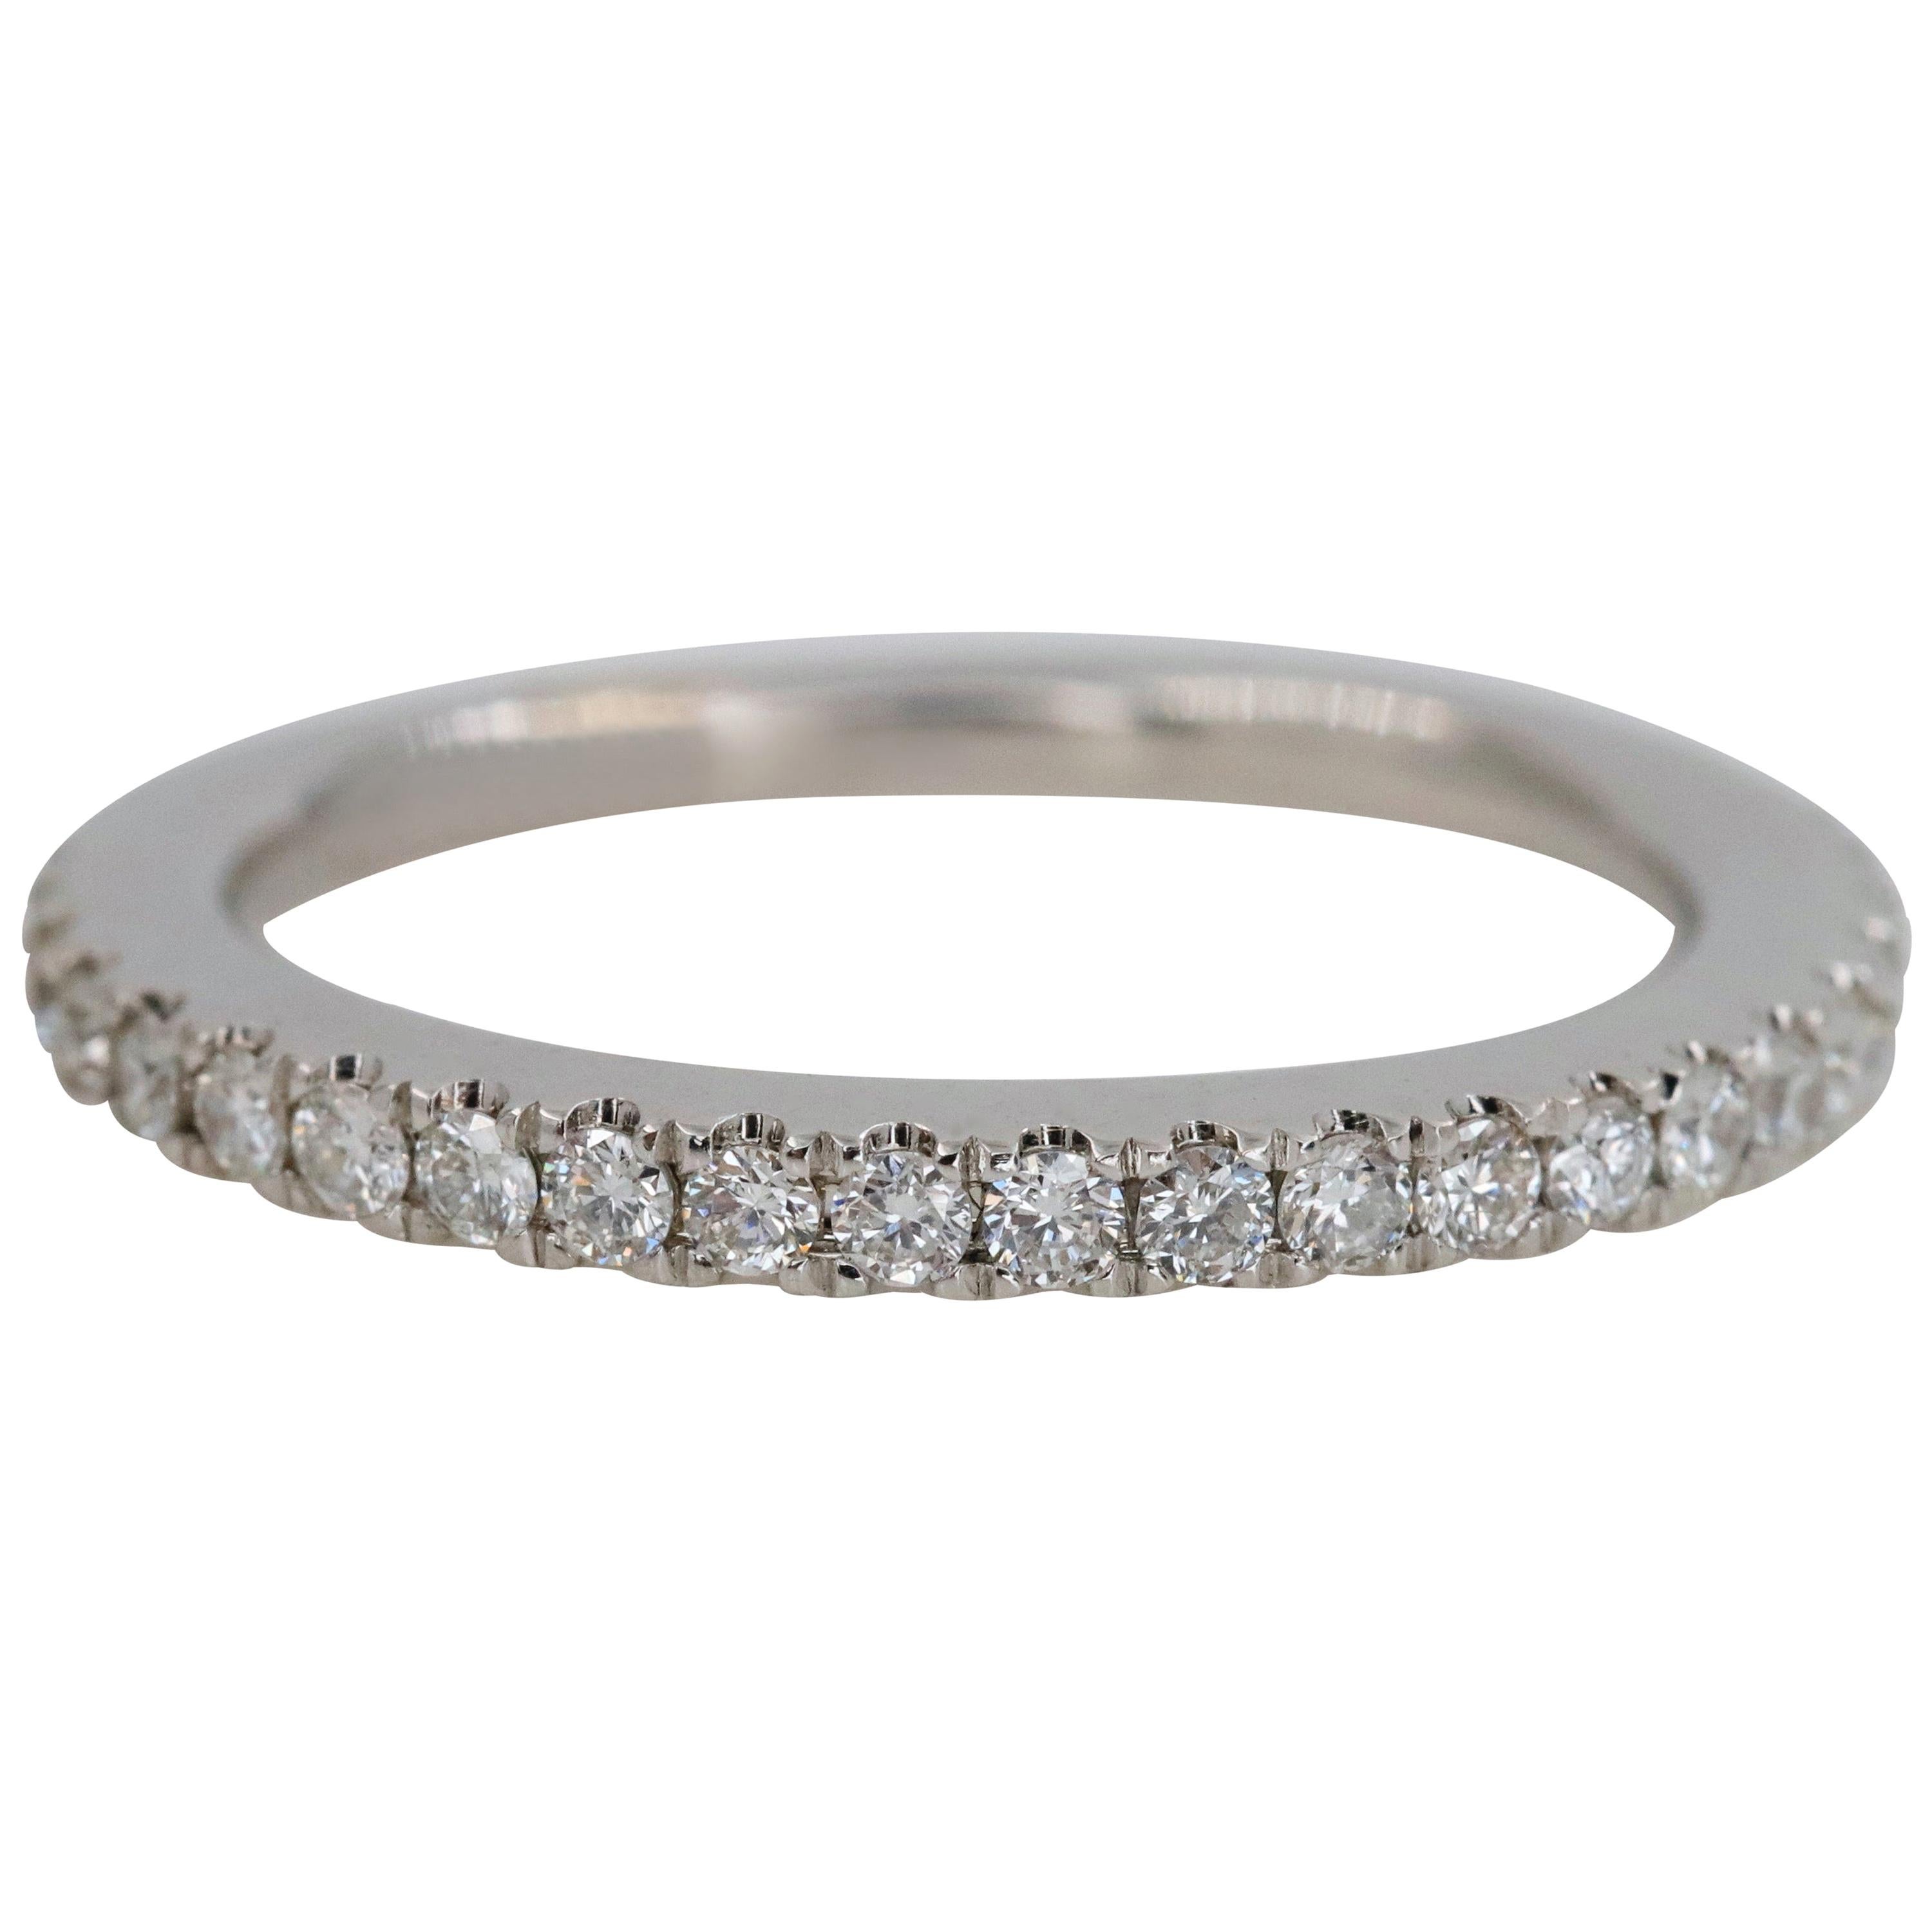 Vera Wang Love 1/4 Carat Diamond Wedding Band Ring 14 Karat White Gold